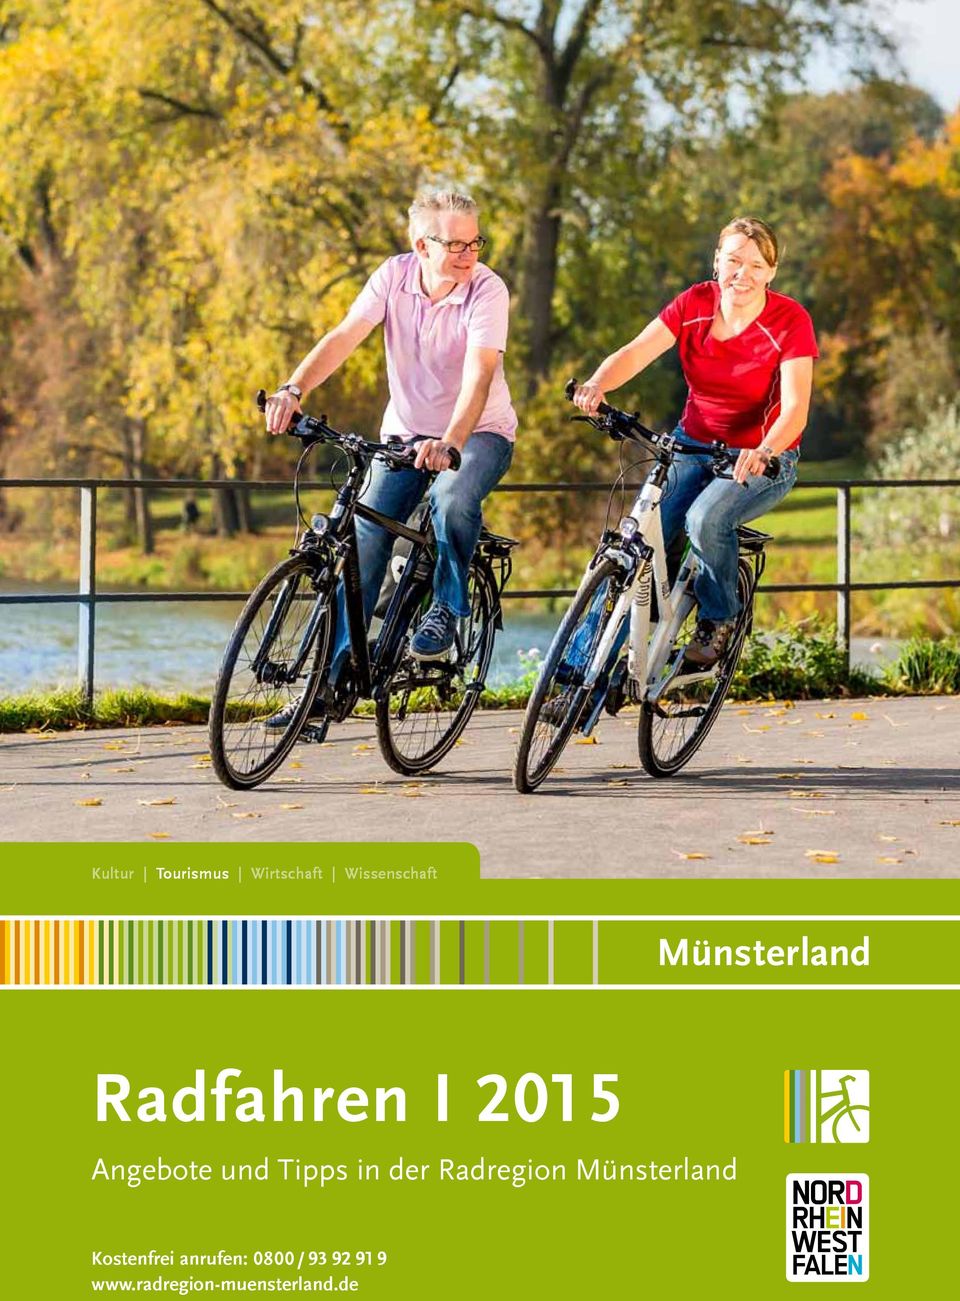 Tipps in der Radregion Münsterland Stand: Oktober 2013